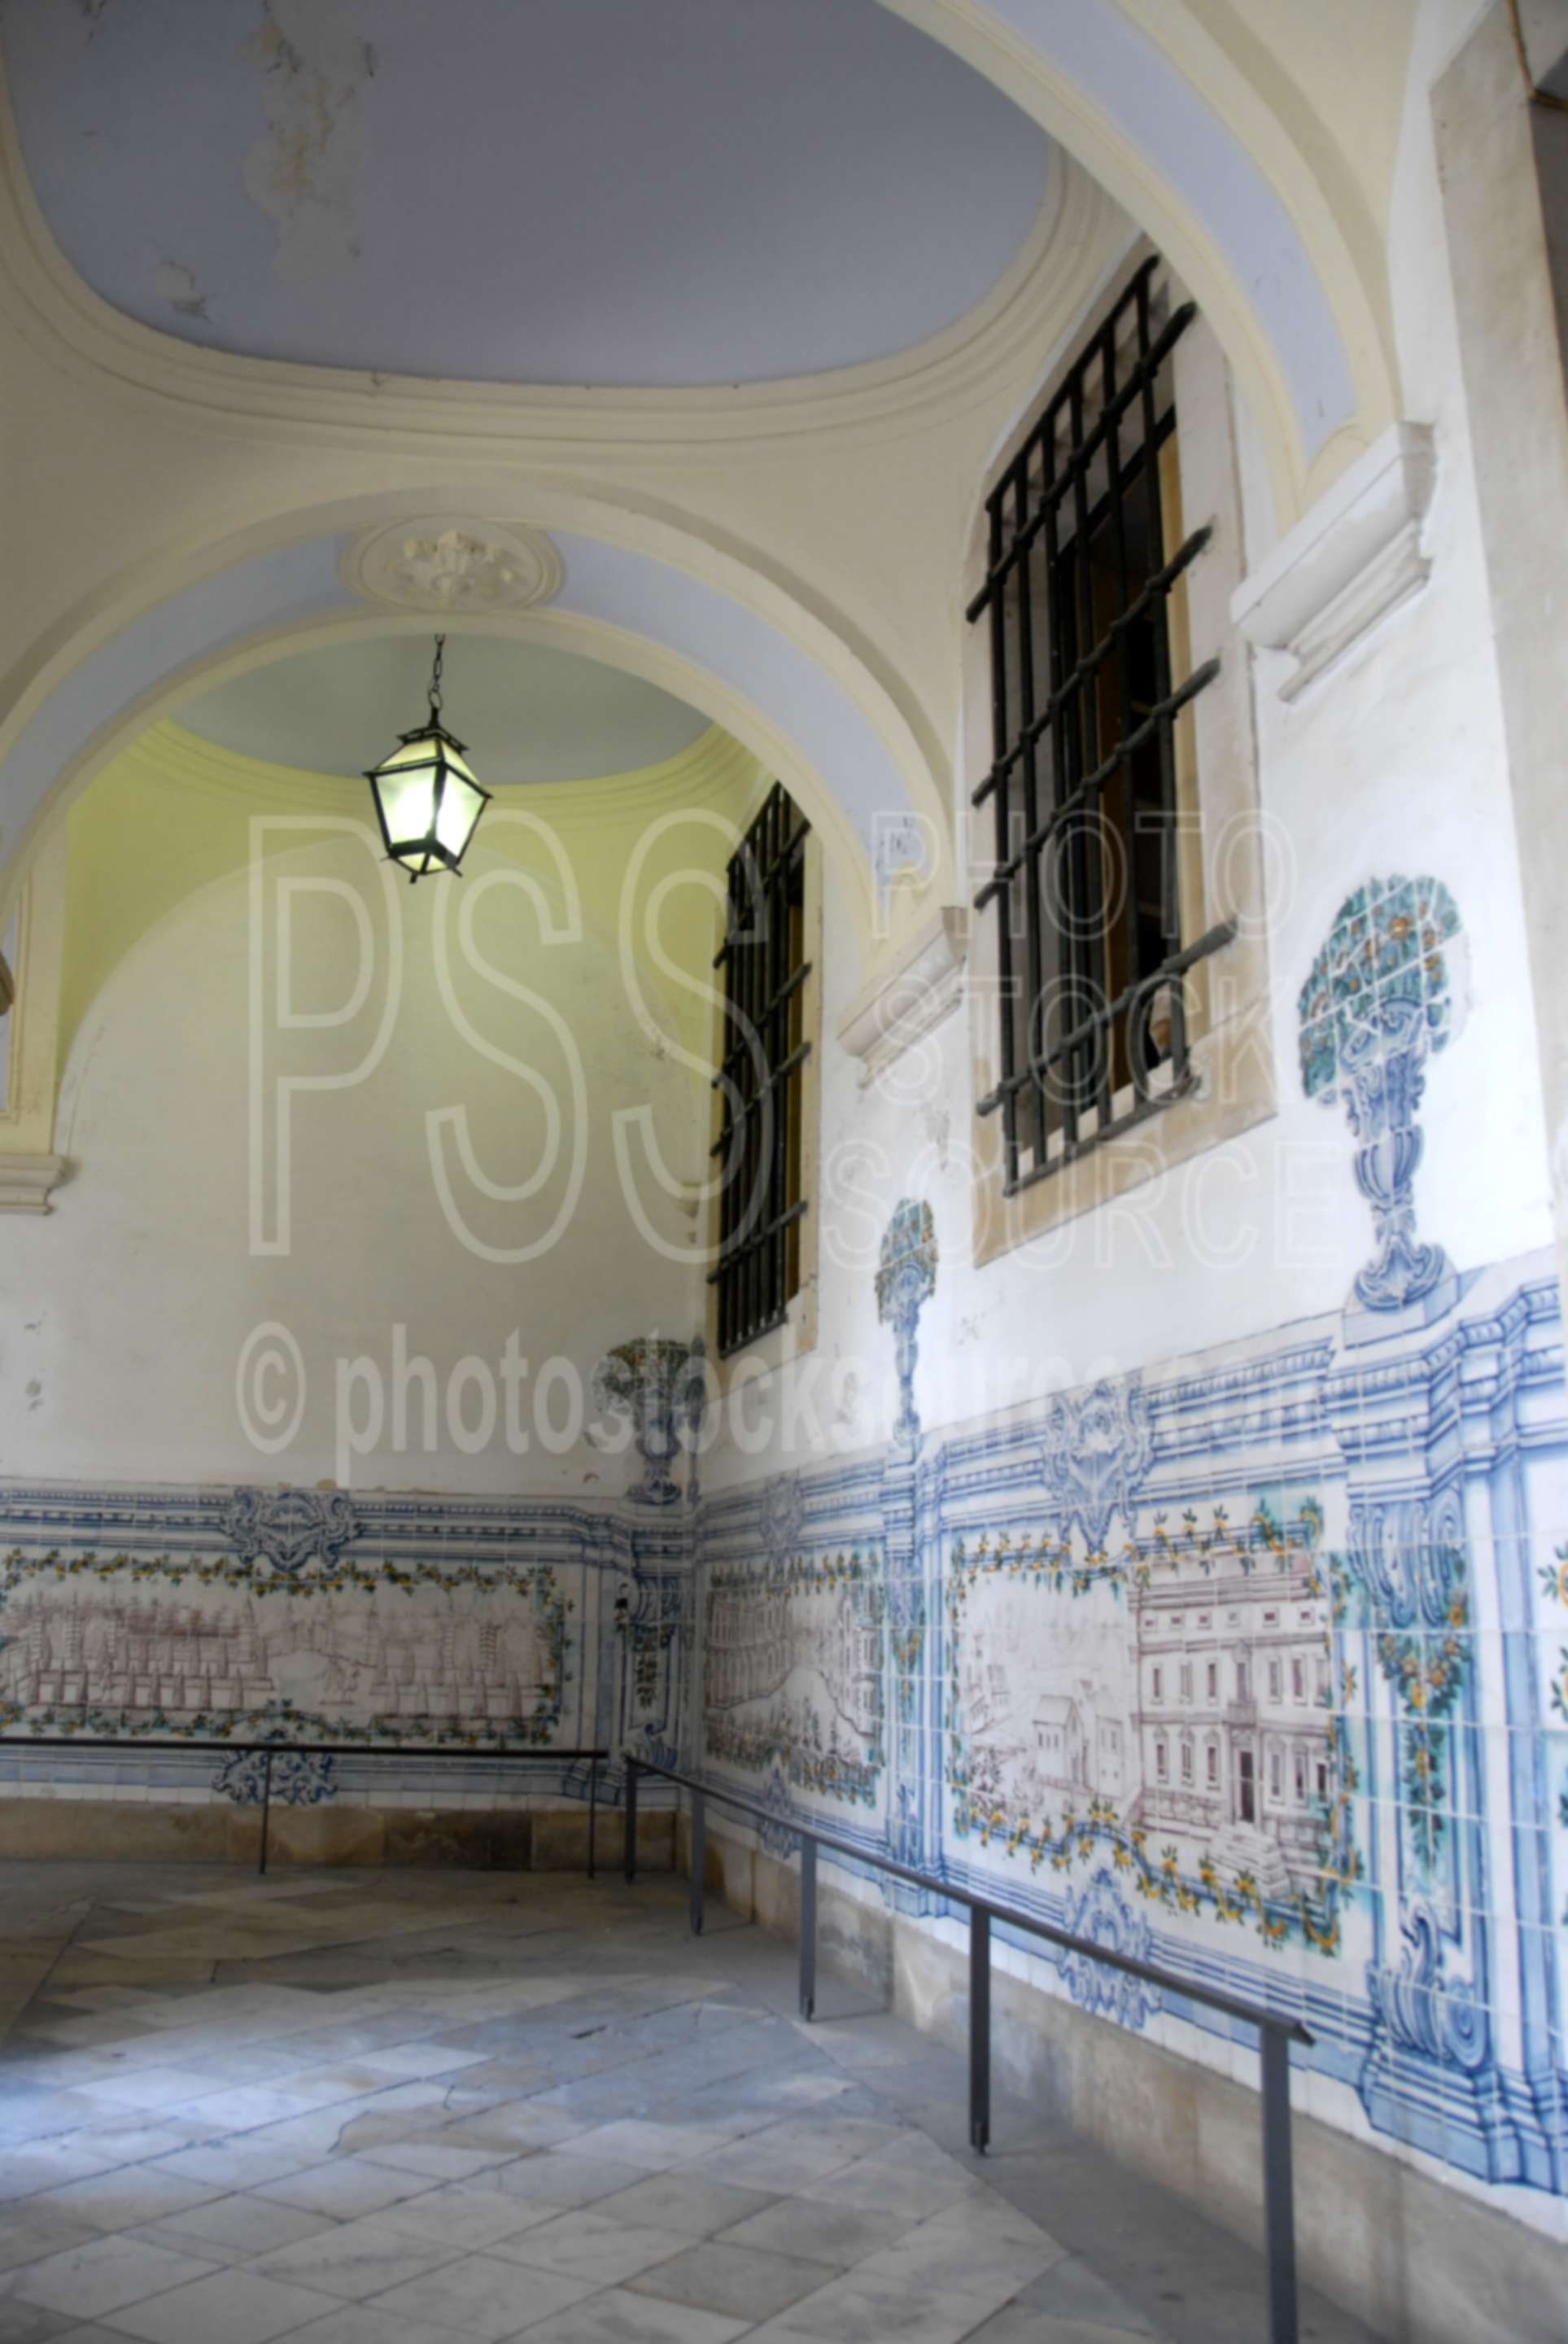 School of Law,azulejos,courtyard